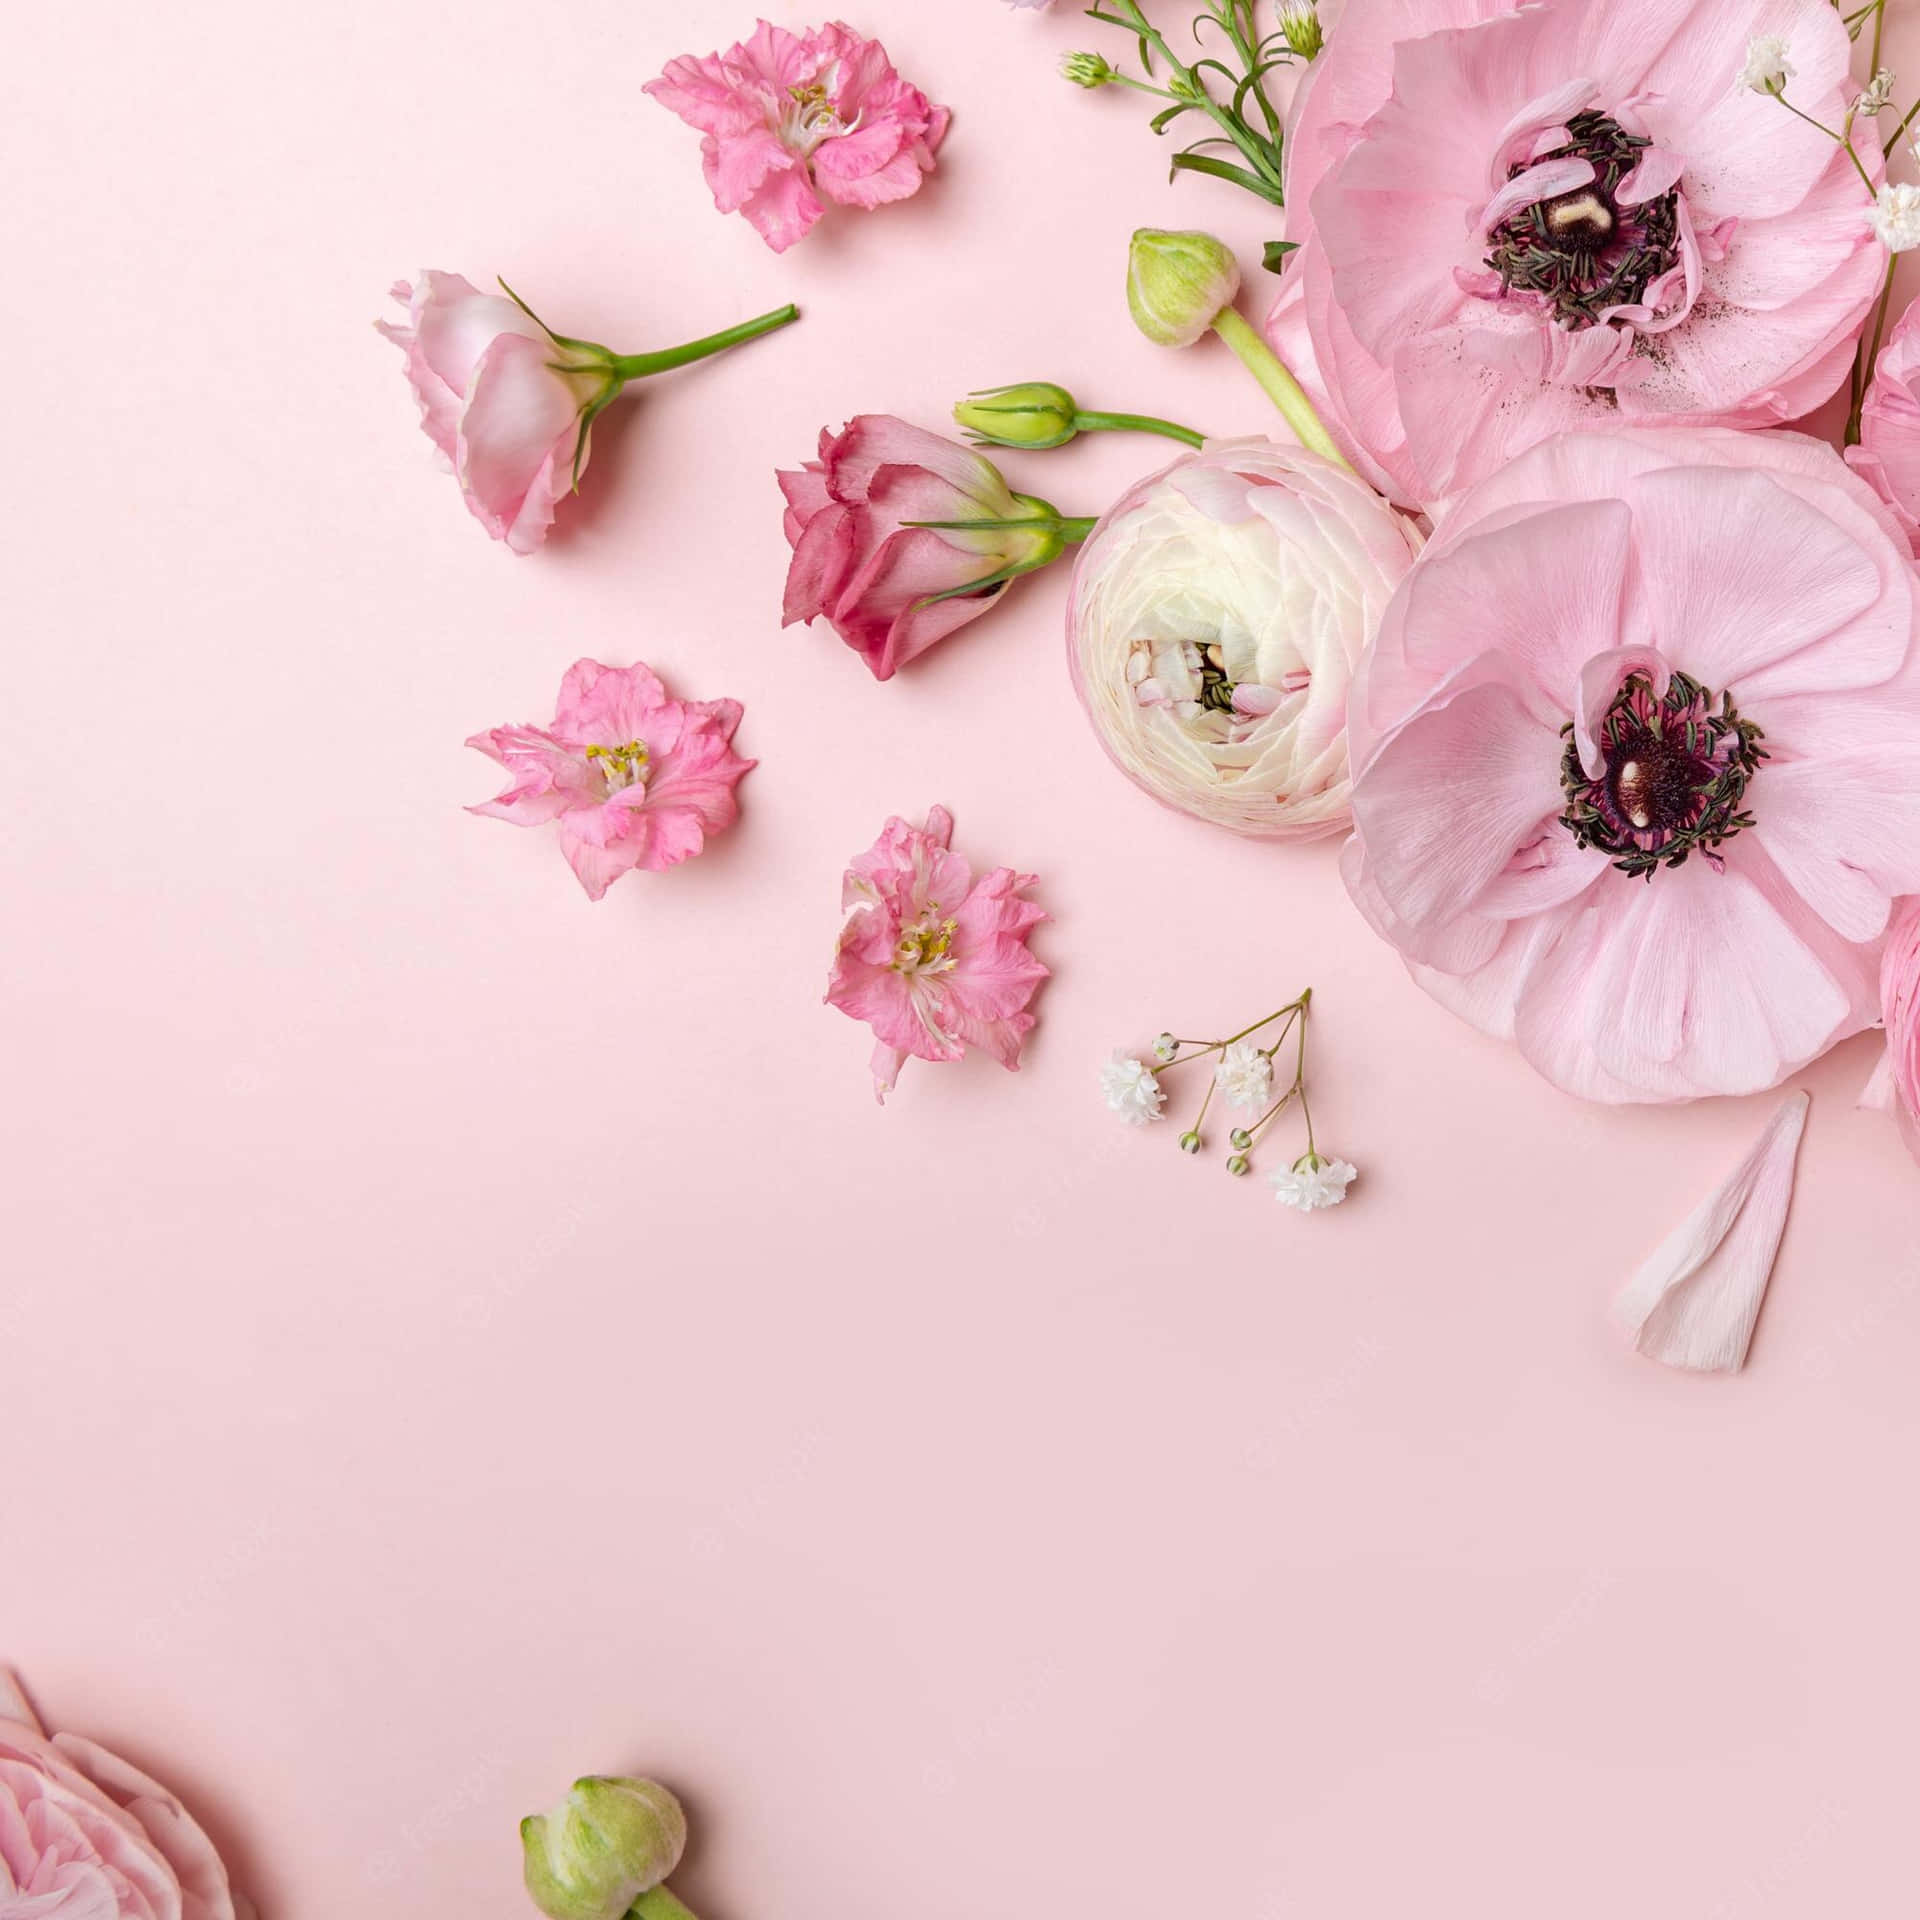 Download Tender Pink Floral Arrangement Wallpaper